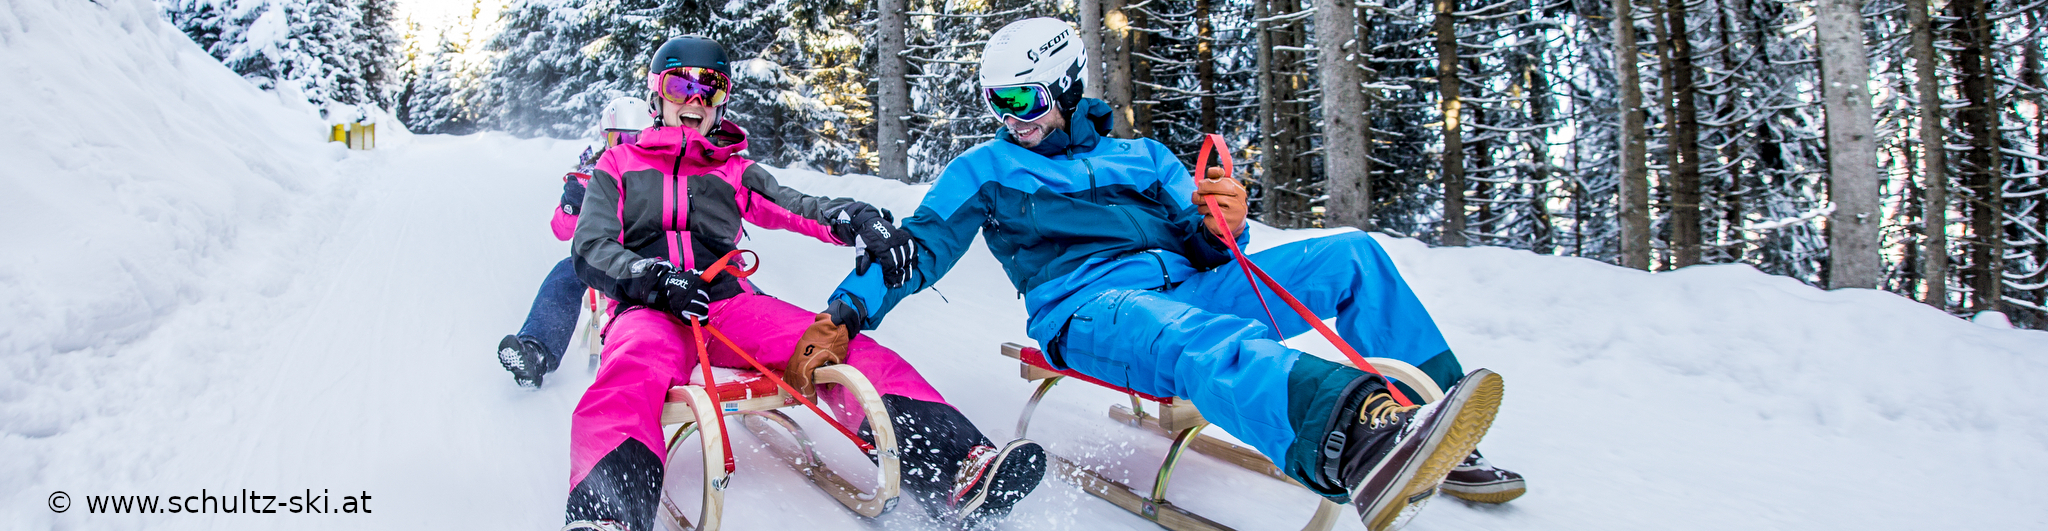 ZILLERTAL – verlängertes Skiwochenende mit 4 Skitagen – in den Weihnachtsferien – Hotel in Strass – ab Mittwoch früh 